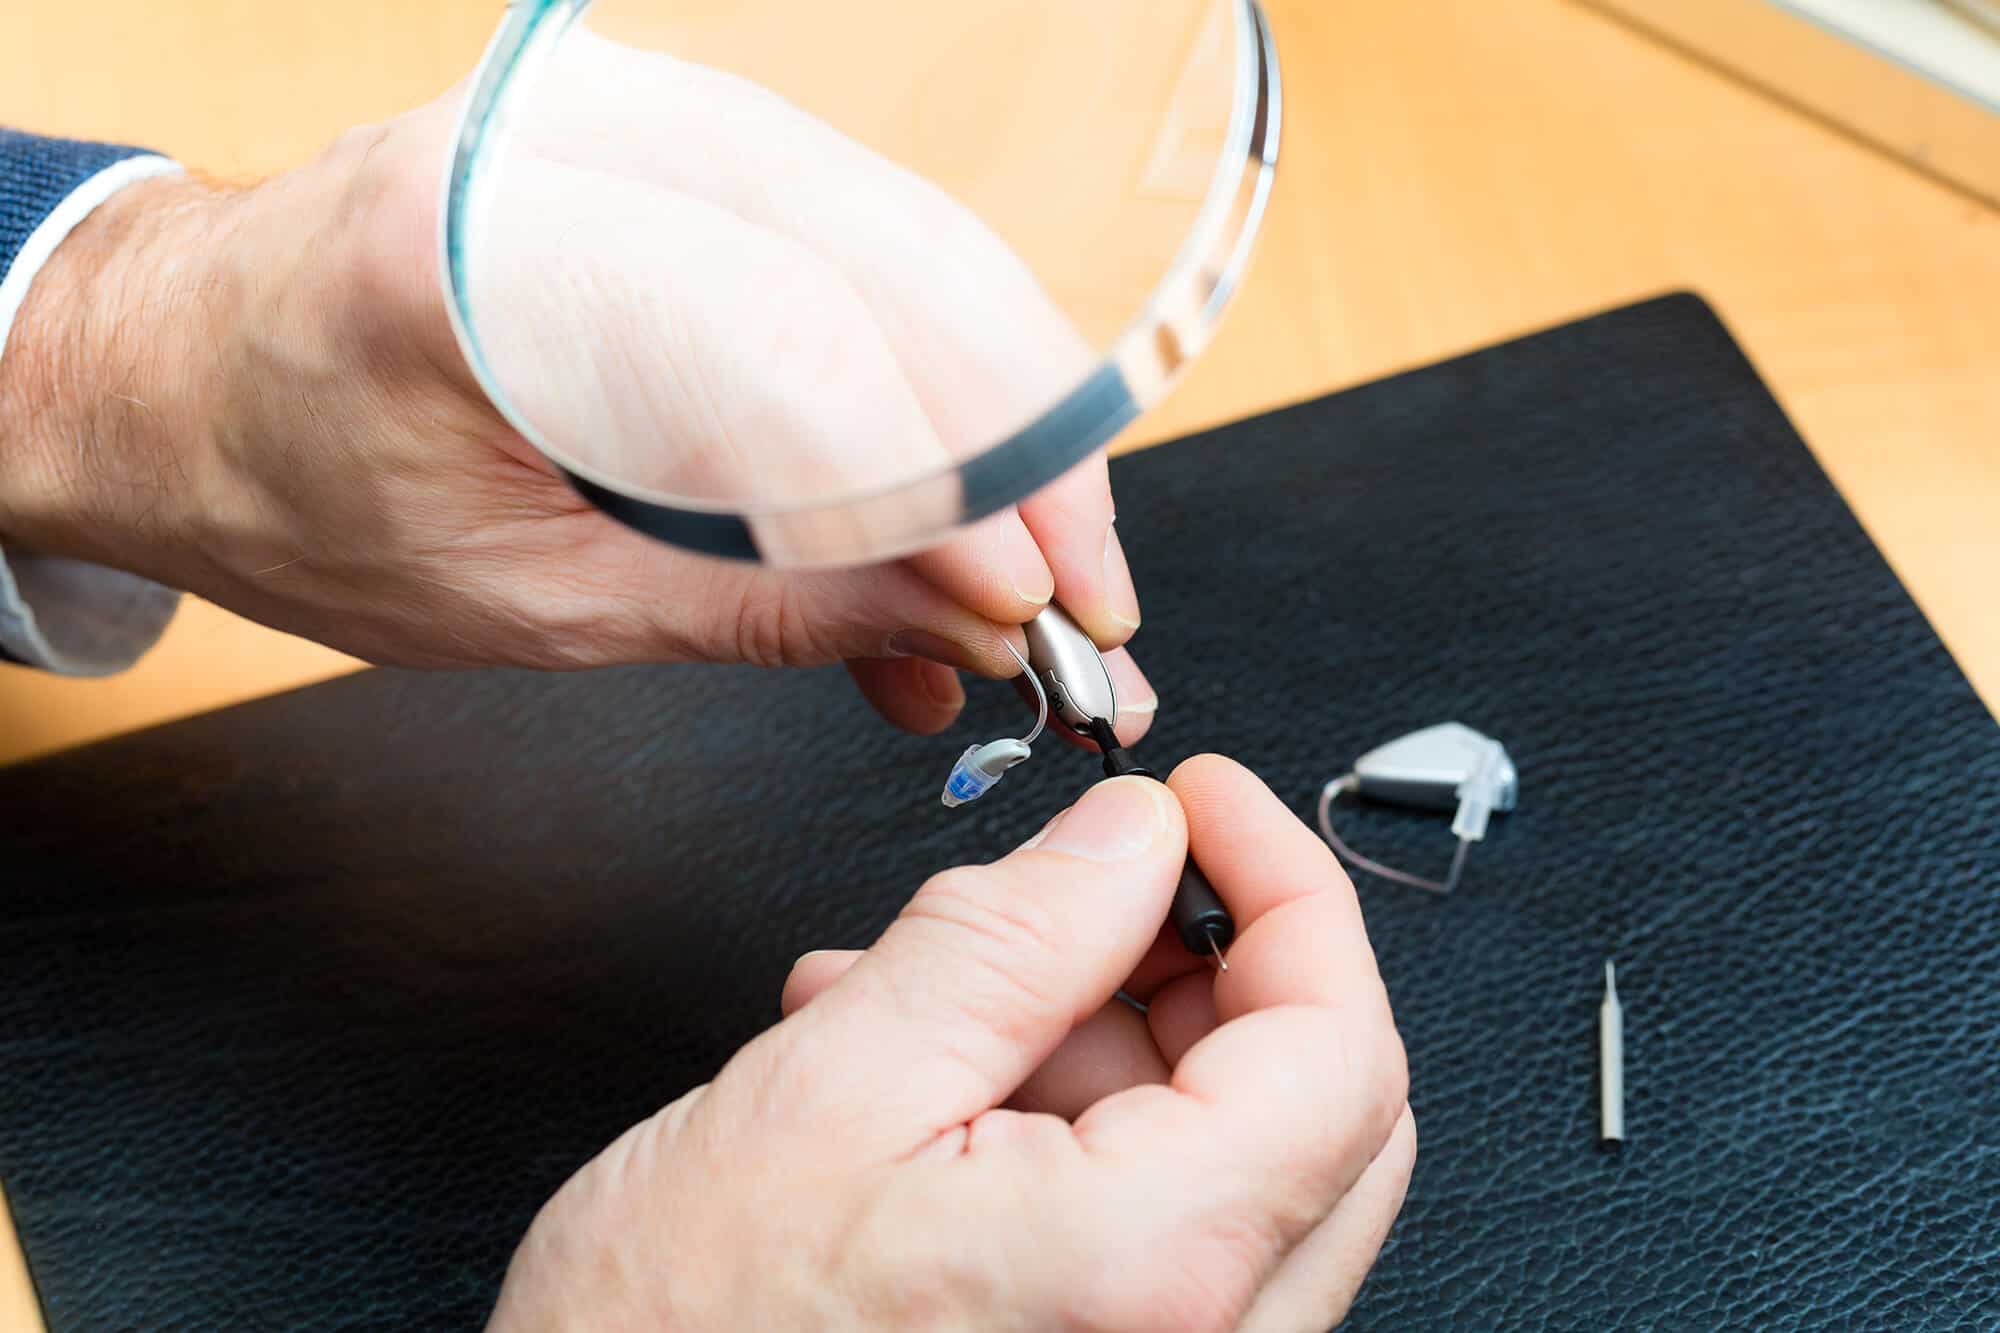 hearing aid repair